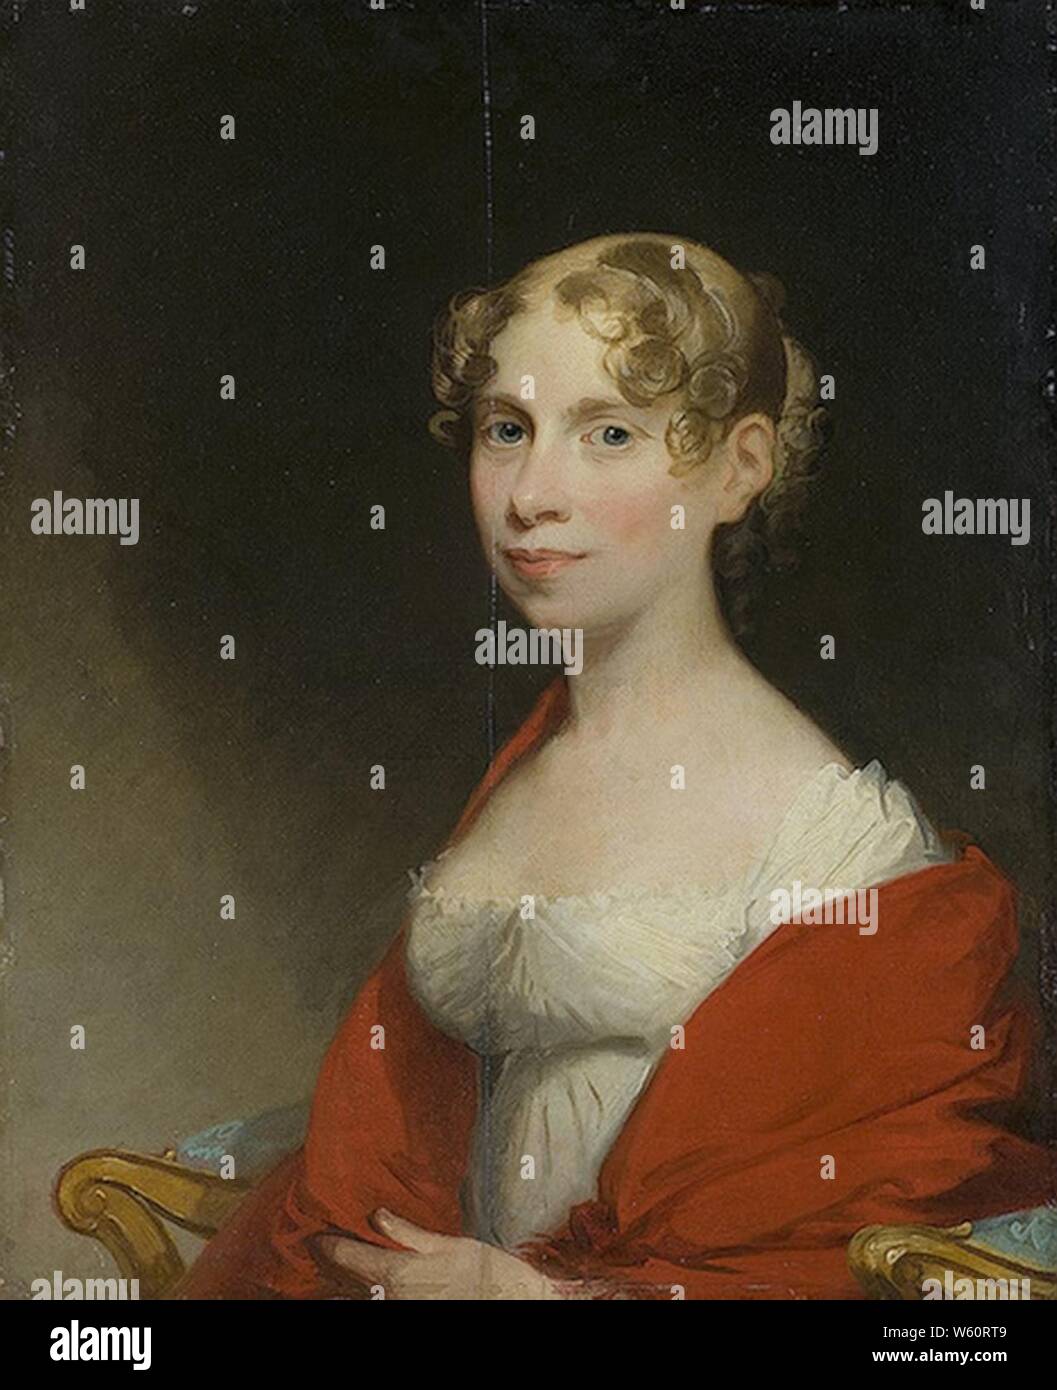 Dashkova by Gilbert Stuart. Stock Photo